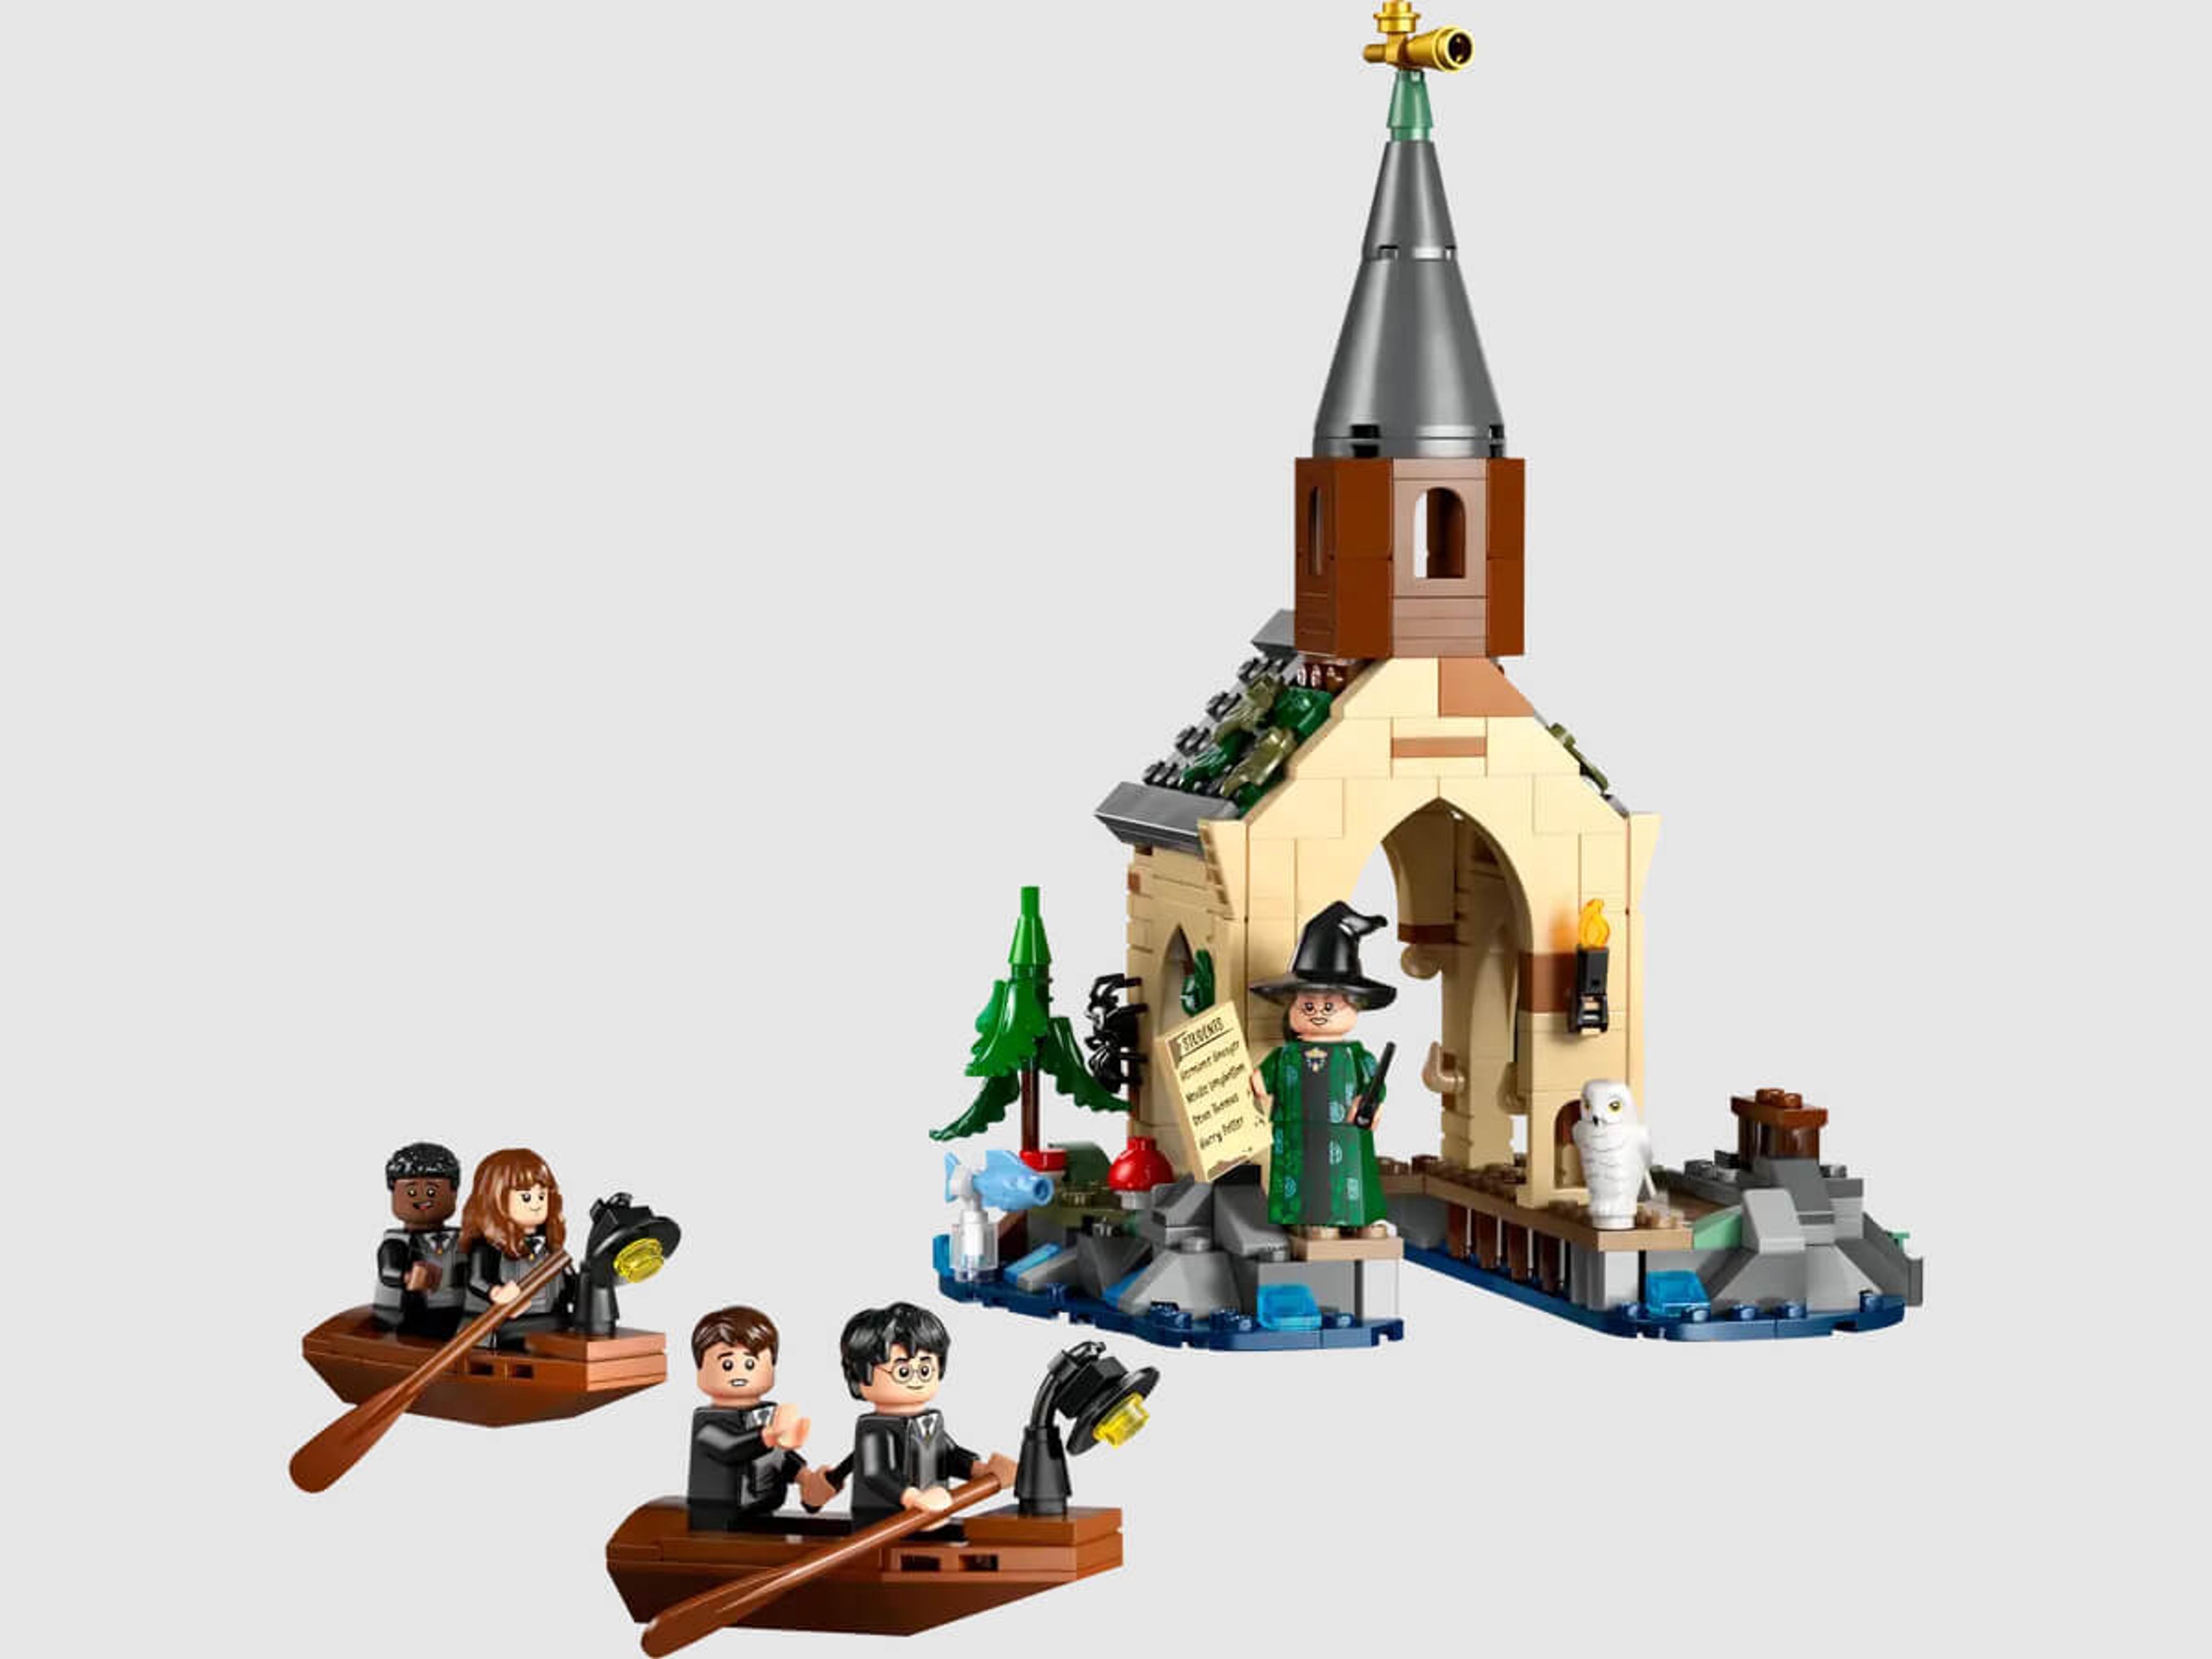 LEGO Harry Potter - Hogwarts Castle Boathouse